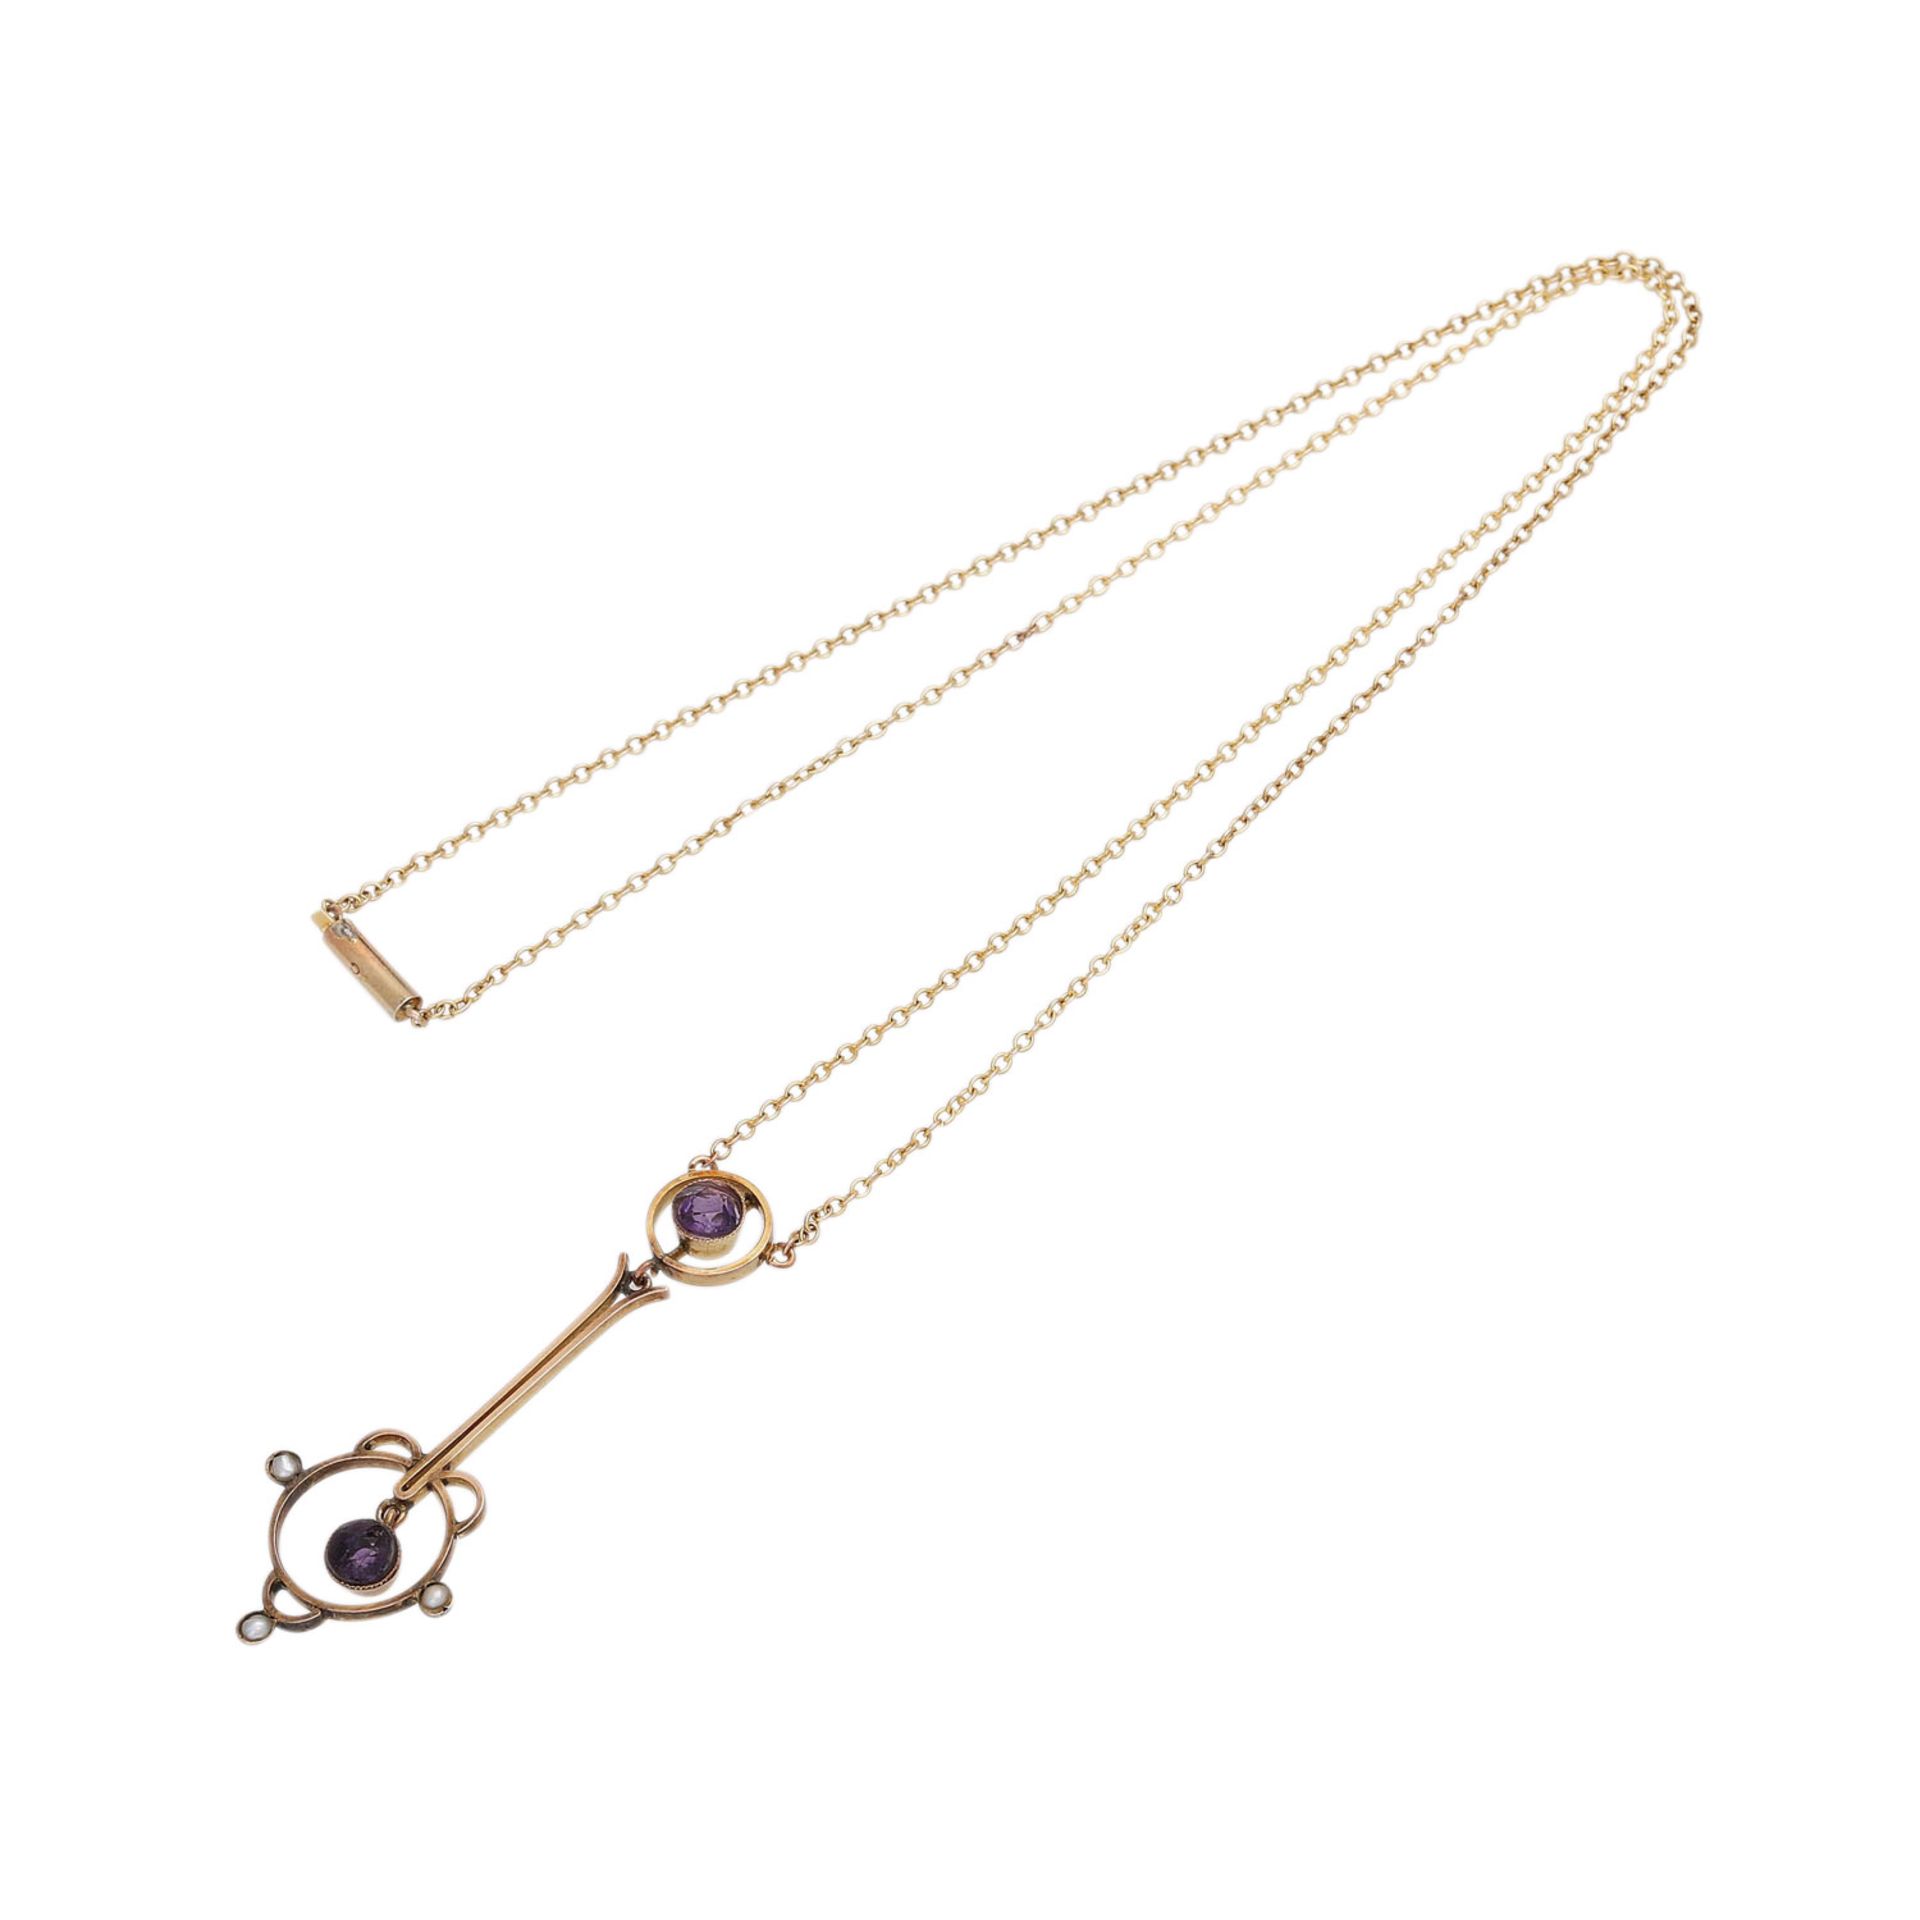 Jugendstil Collier mit kleinen Amethystenund kleinen Perlen, GG 9K, Kettenlänge ca. 39 cm, - Bild 3 aus 4